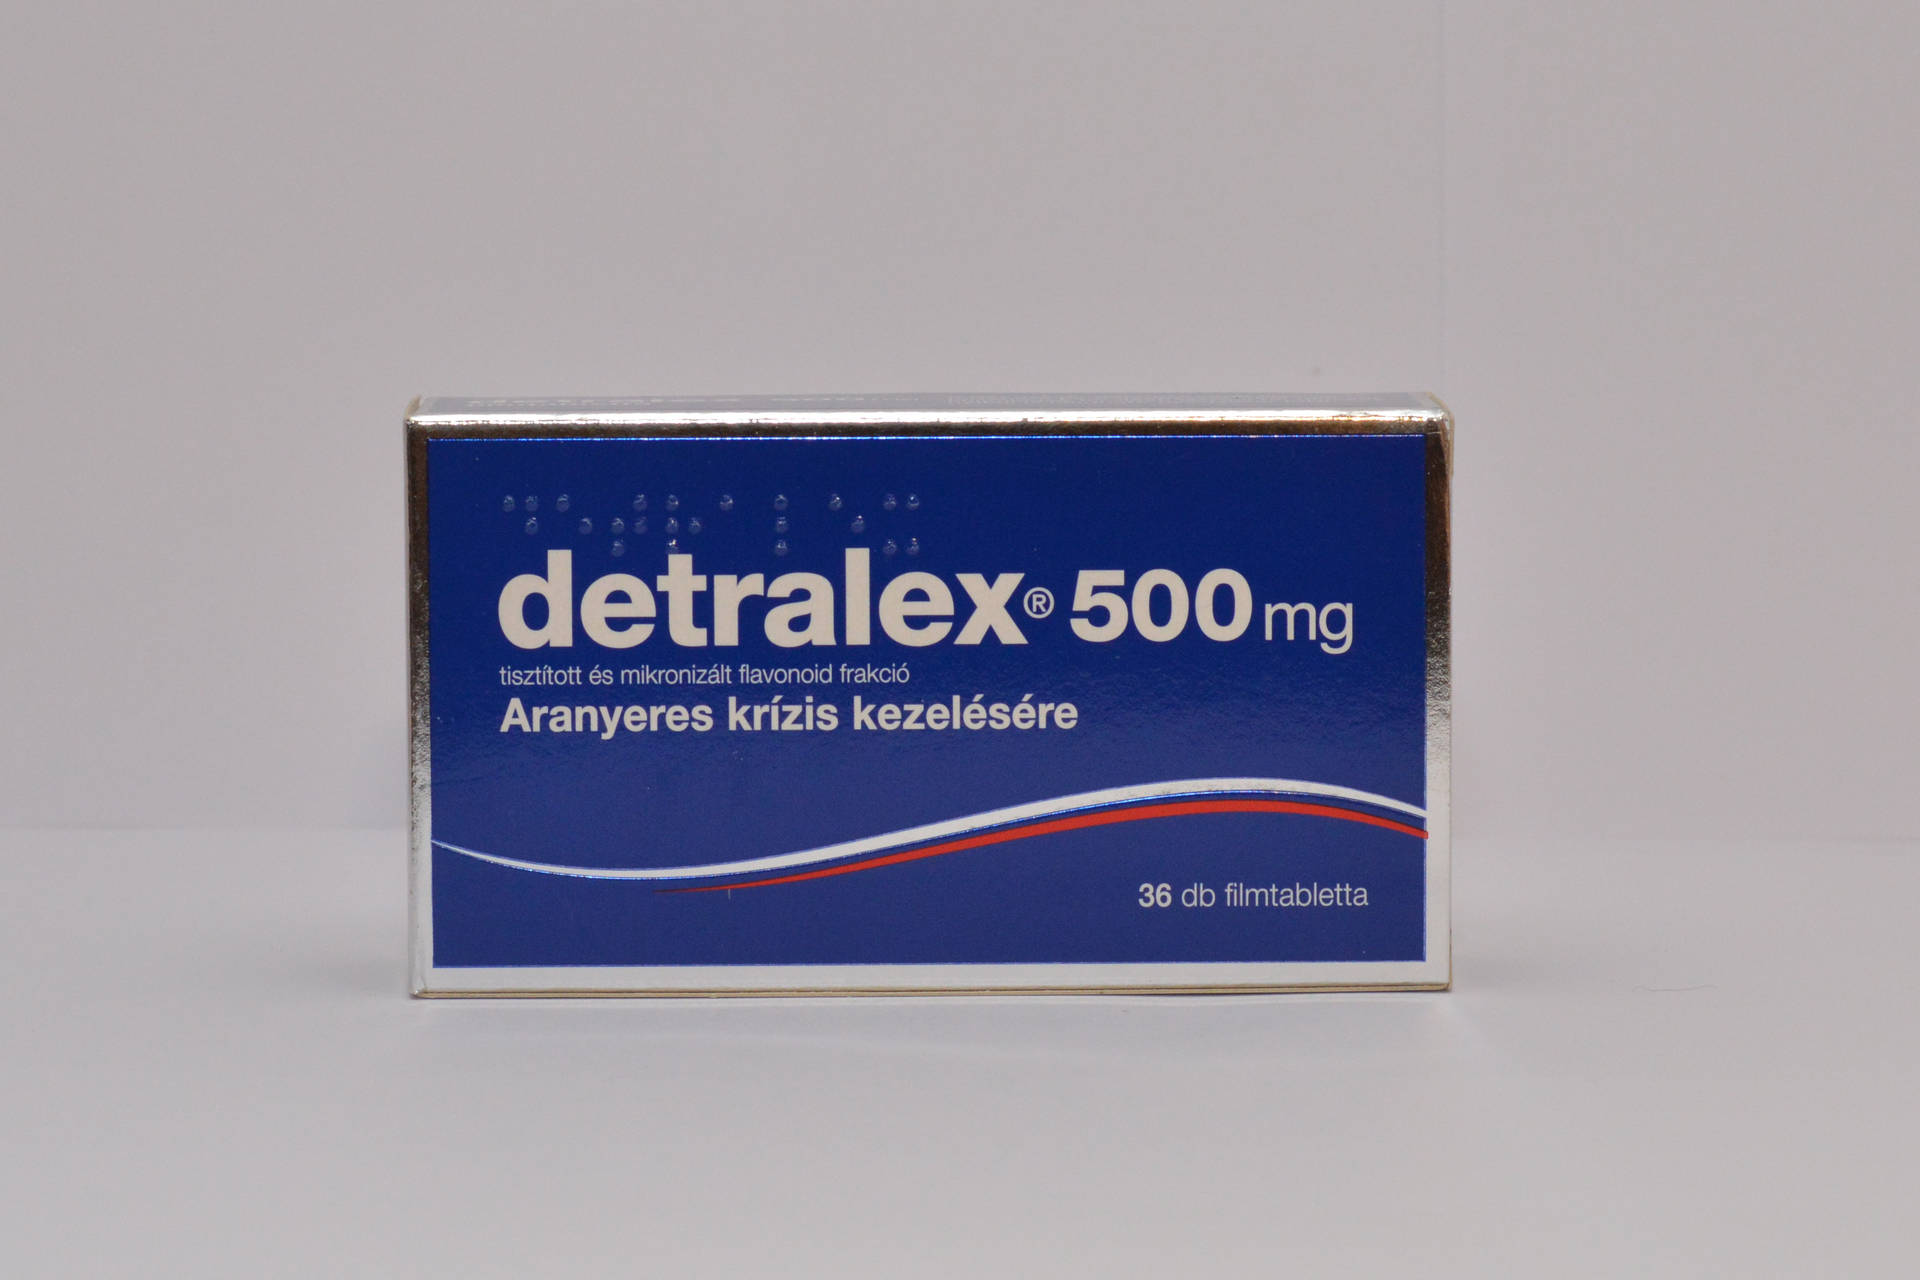 DETRALEX mg filmtabletta - Gyógyszerkereső - Hámahjong.co.hu